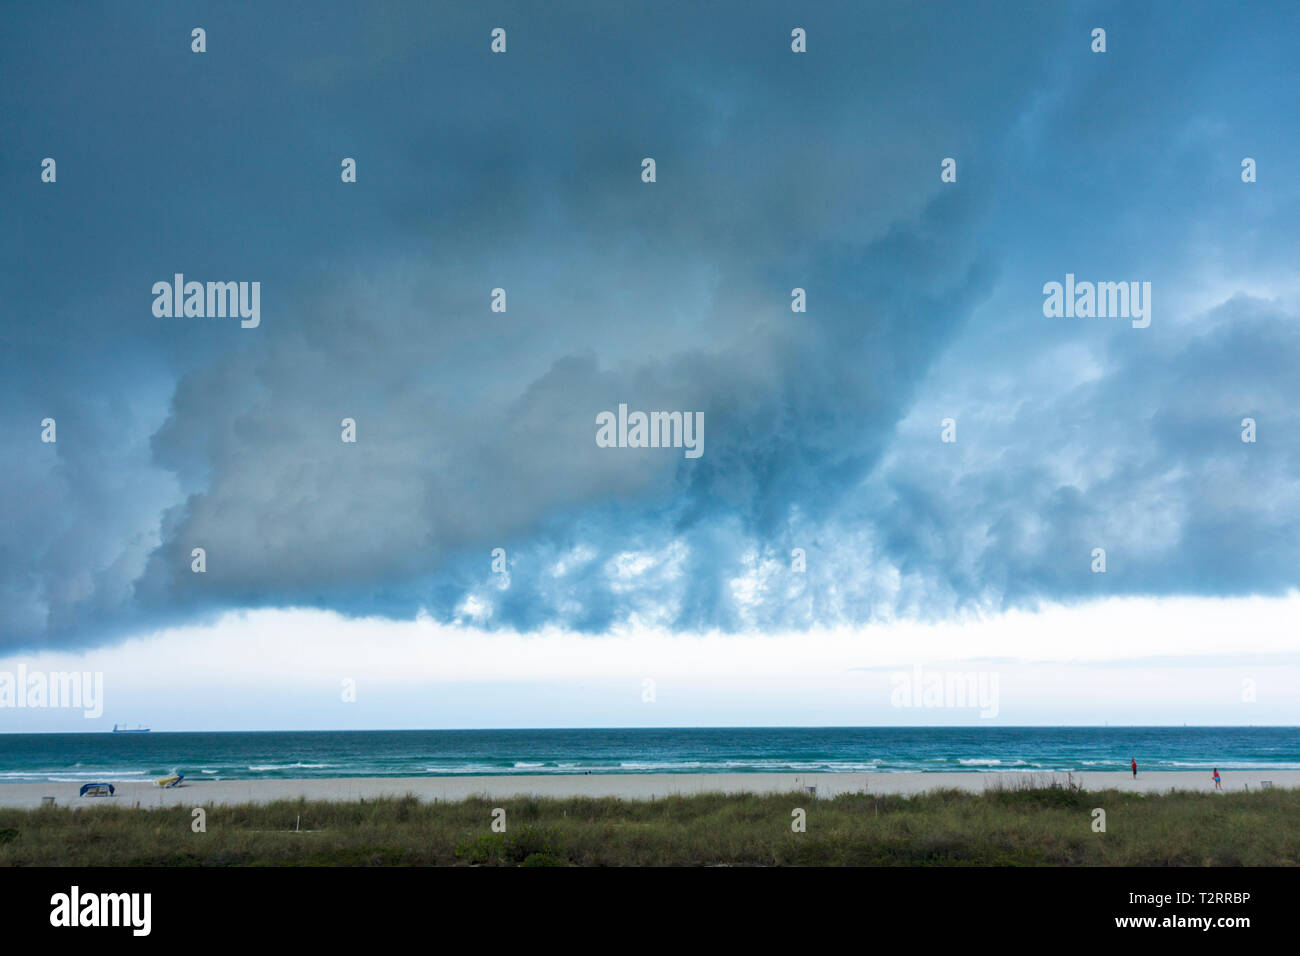 Miami Beach Florida,Oceano Atlantico,acqua,fronte freddo,tempo,tempesta,tempesta,grigio,nuvole,nuvoloso,minaccioso,ominoso,cielo scuro,FL090417029 Foto Stock